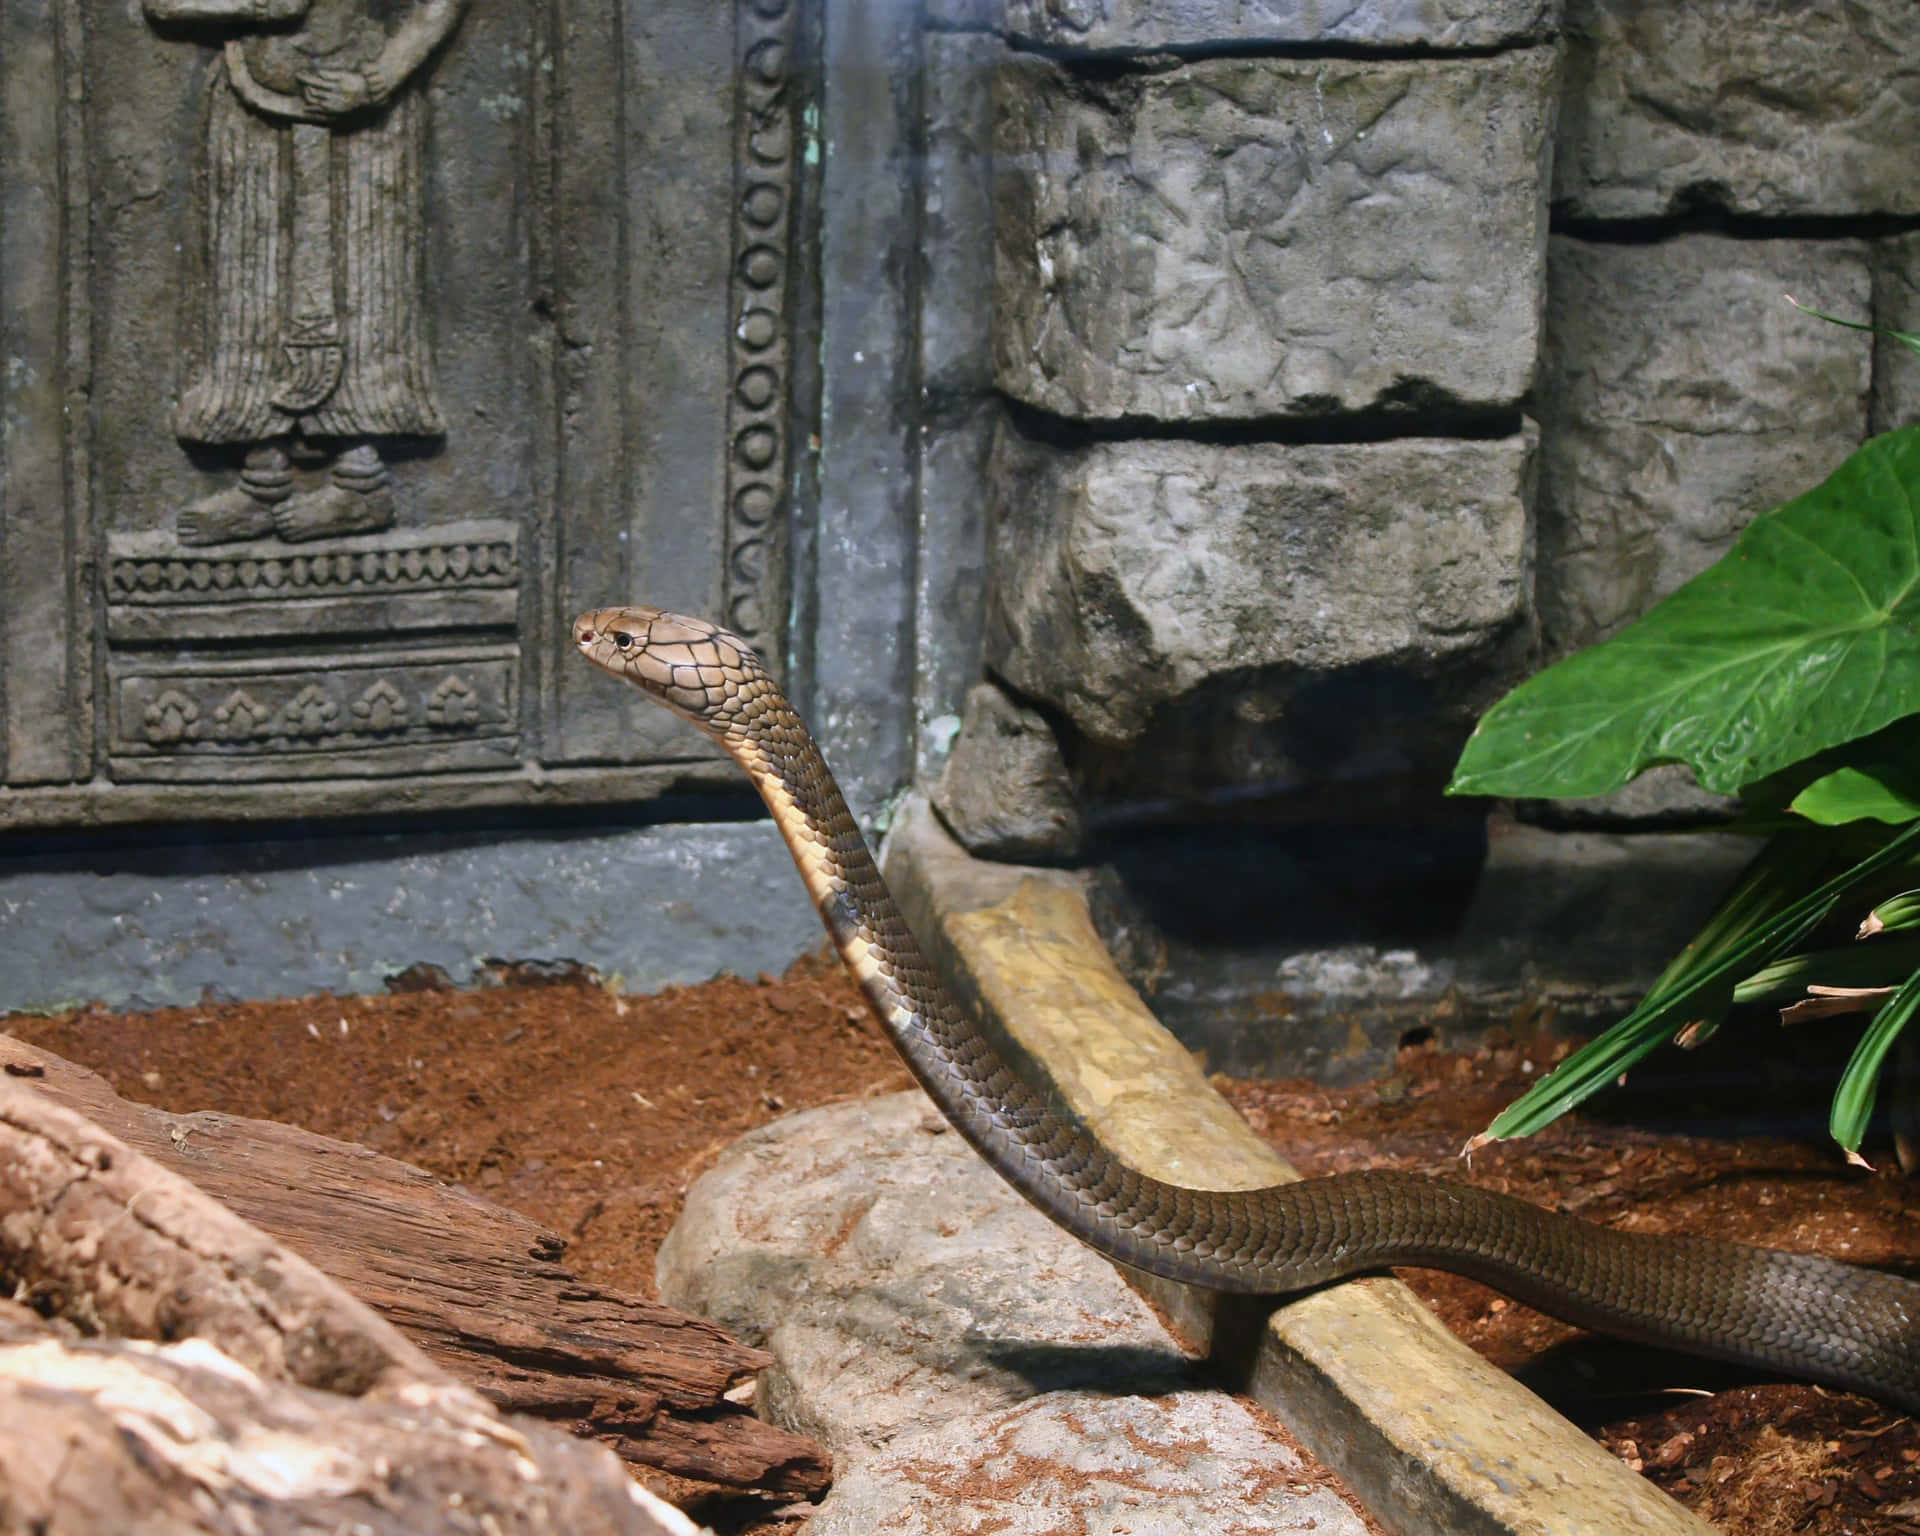 Ettæt Billede Af En Kongekobra-slange.